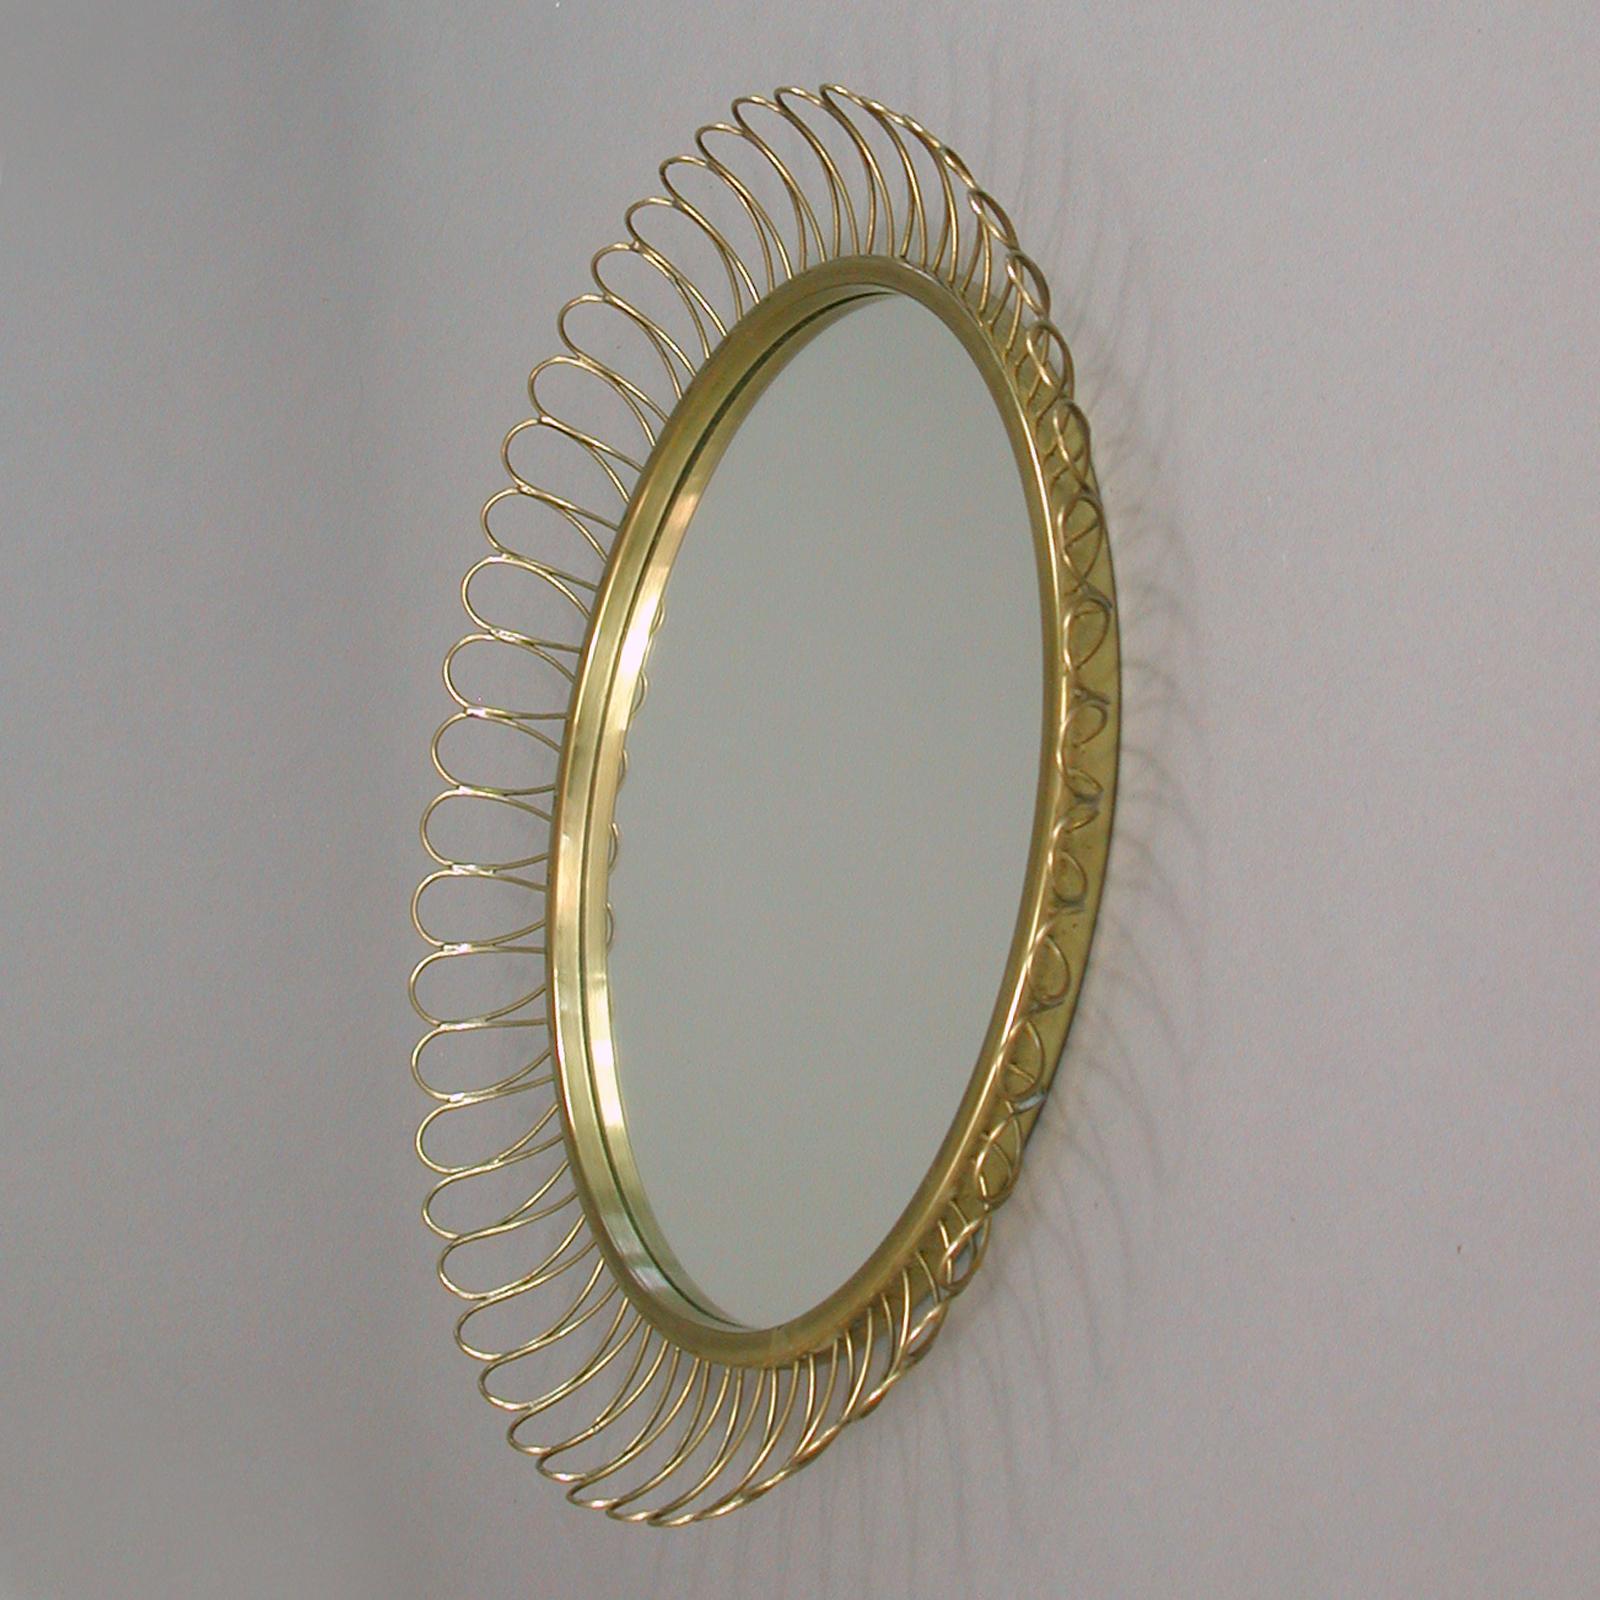 Midcentury Sculptural Round Brass Wall Mirror, Sweden, 1950s For Sale 3